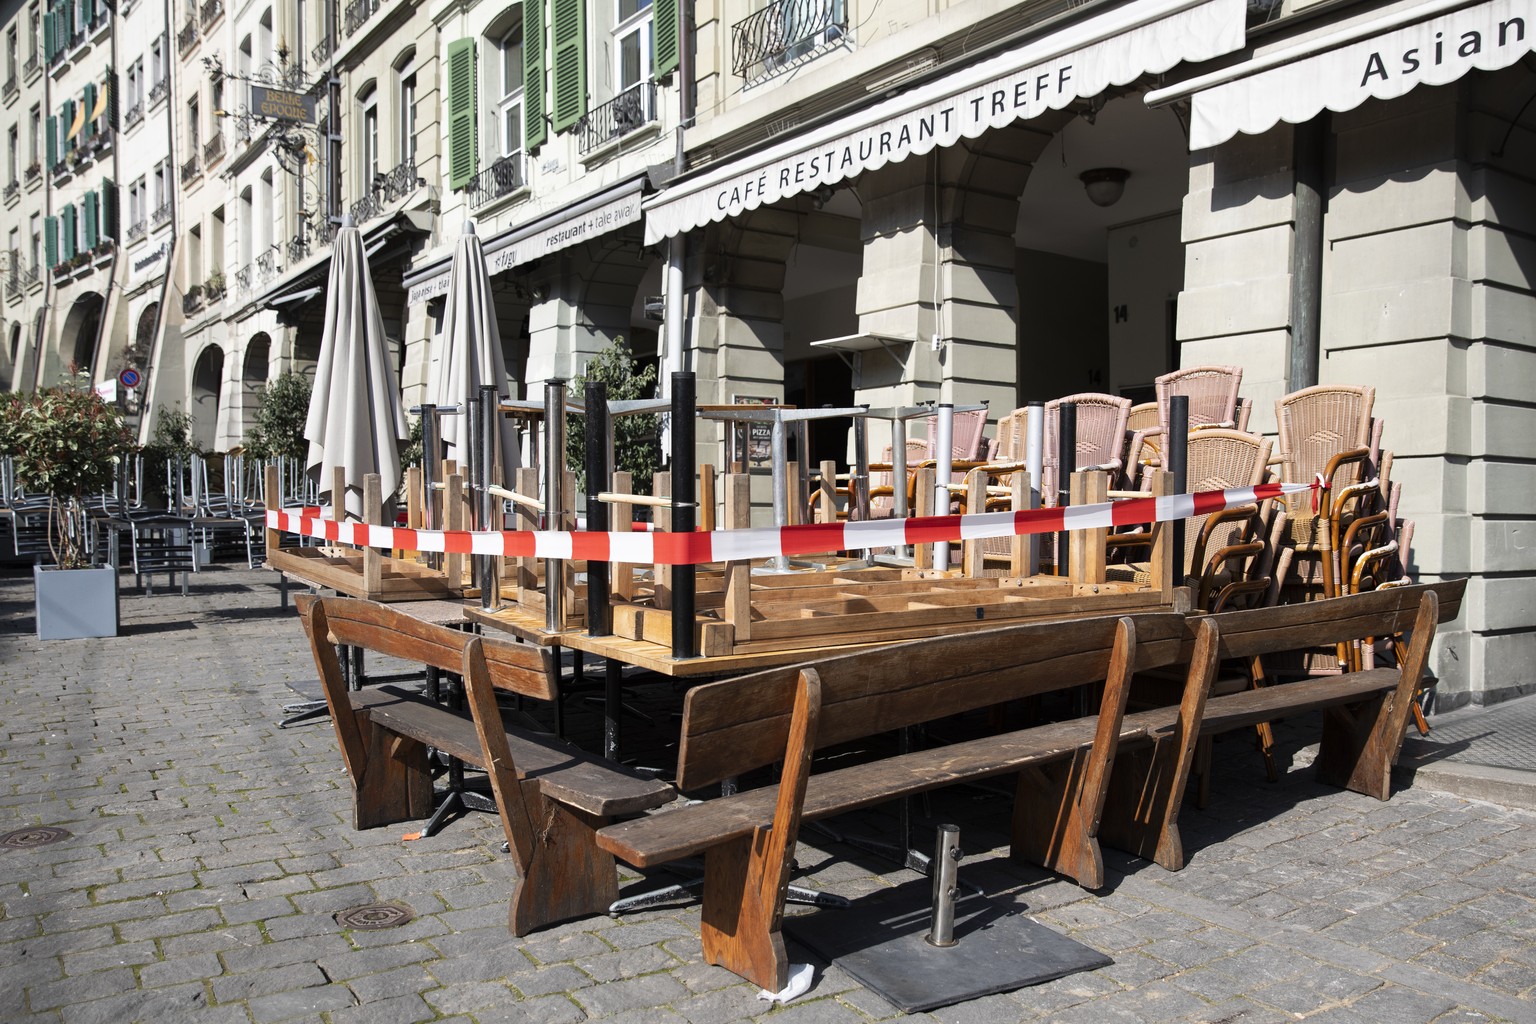 Tische und Stuehle stehen vor einem geschlossenen Restaurant in Bern, am Donnerstag, 19. Maerz 2020. (KEYSTONE/Peter Klaunzer)